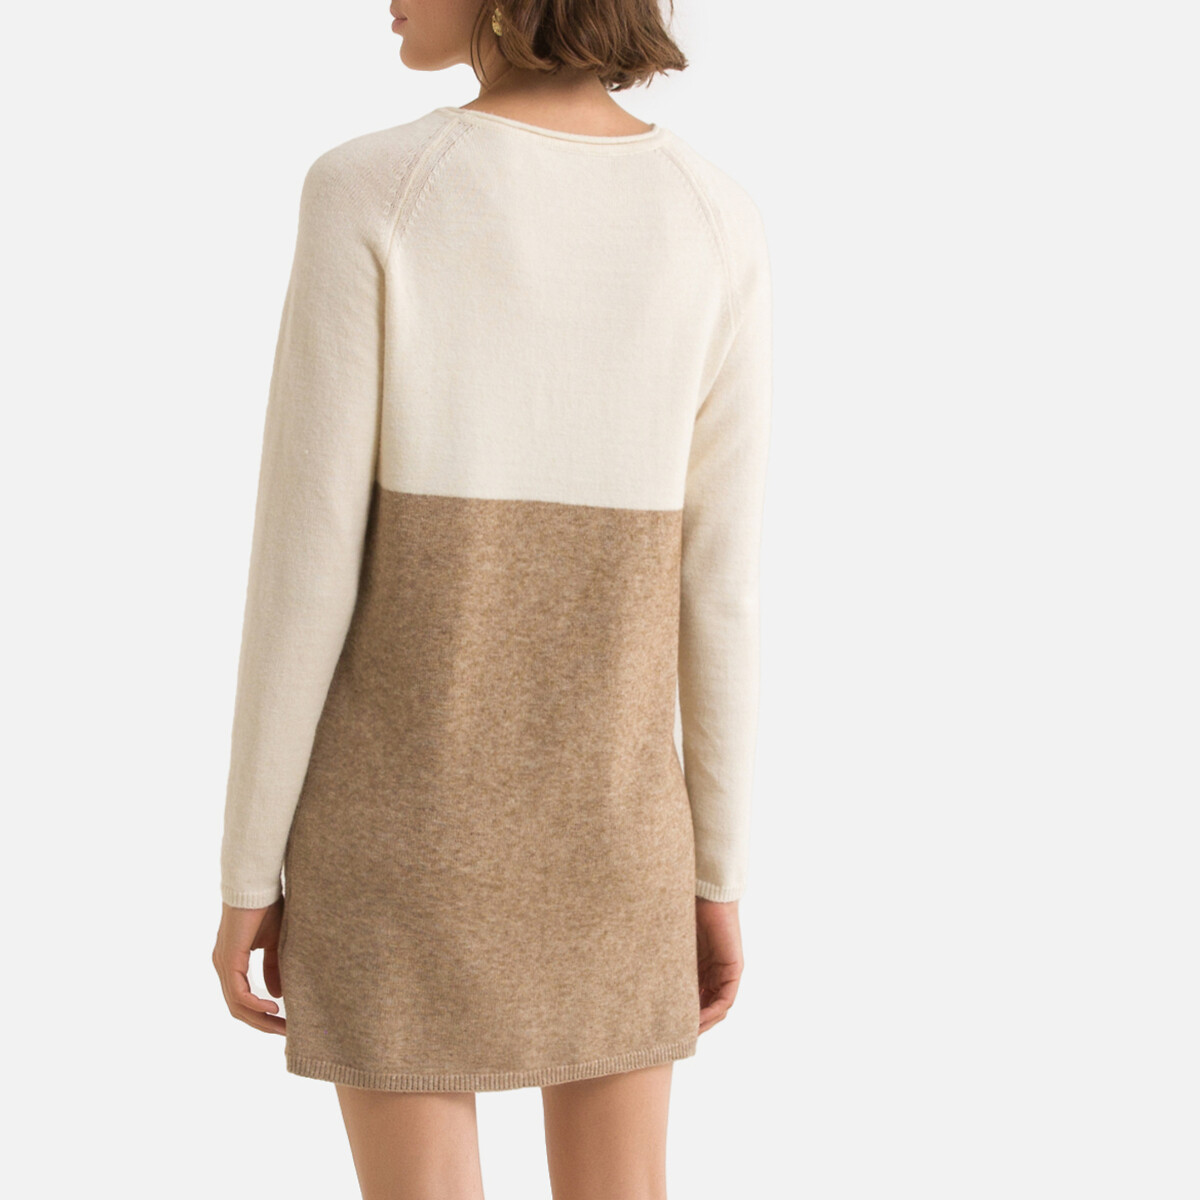 Платье-пуловер LaRedoute Трехцветное из плотного трикотажа S бежевый, размер S - фото 4